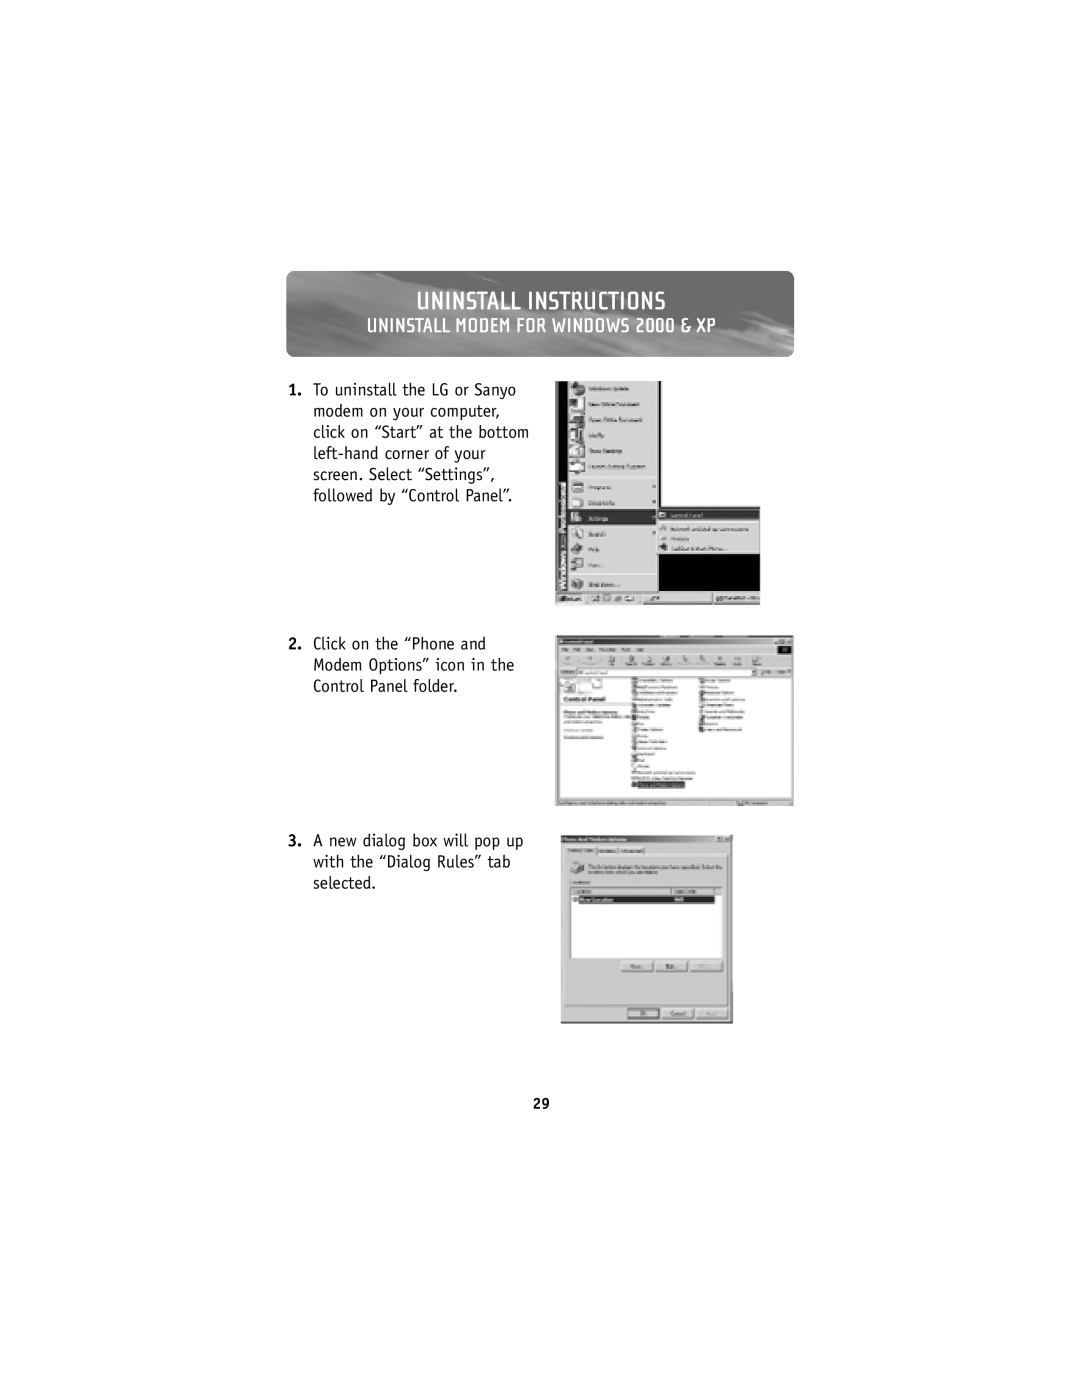 Belkin F8V7D008-SS, F8V7D006-SS user manual UNINSTALL MODEM FOR WINDOWS 2000 & XP, Uninstall Instructions 